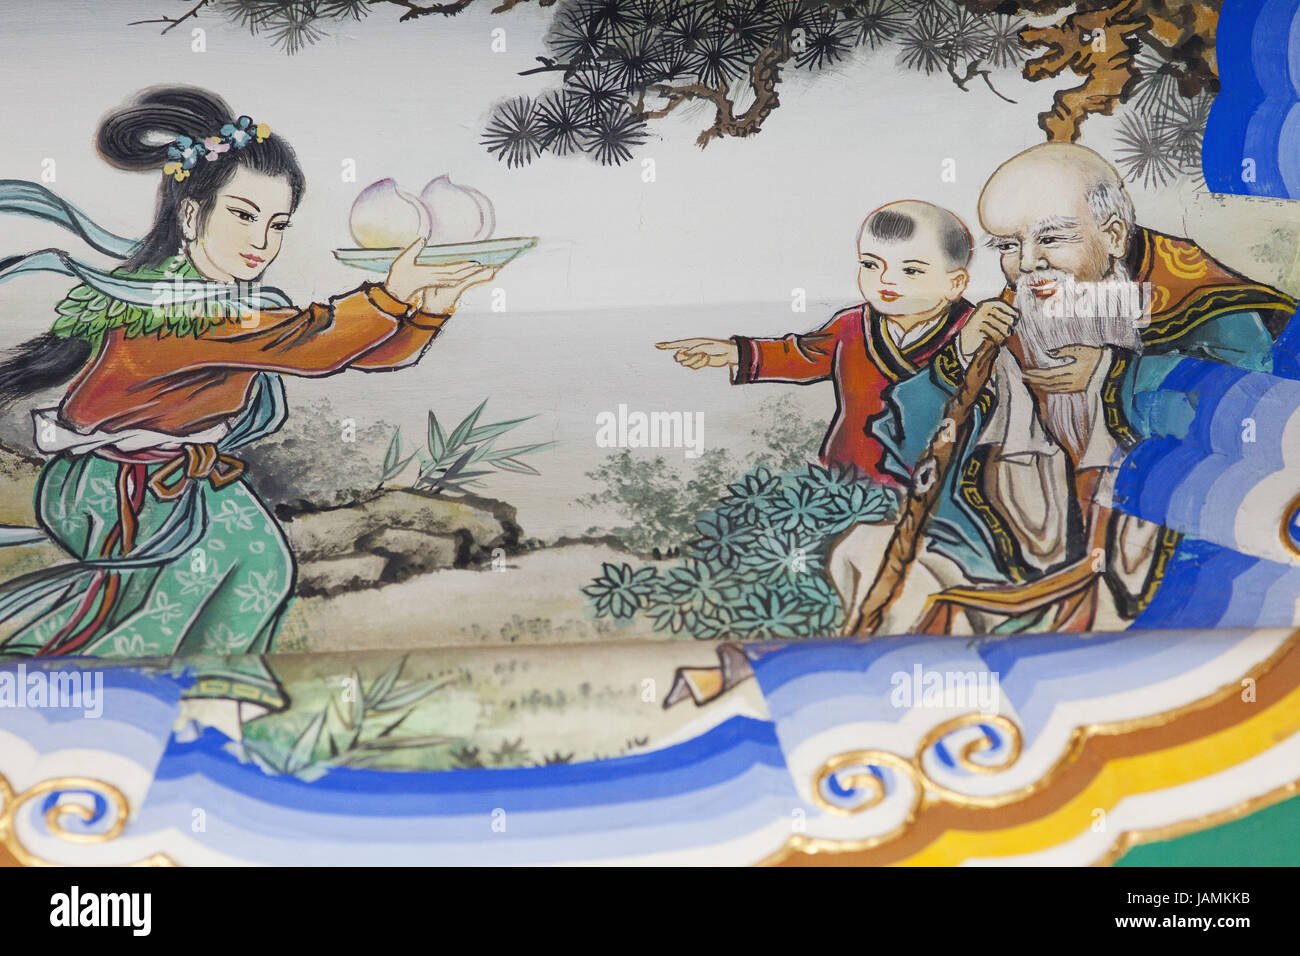 China,Peking,summer palace,Buddhist odour pavilion,painting,historical subscription,scene from the Chinese mythology, Stock Photo